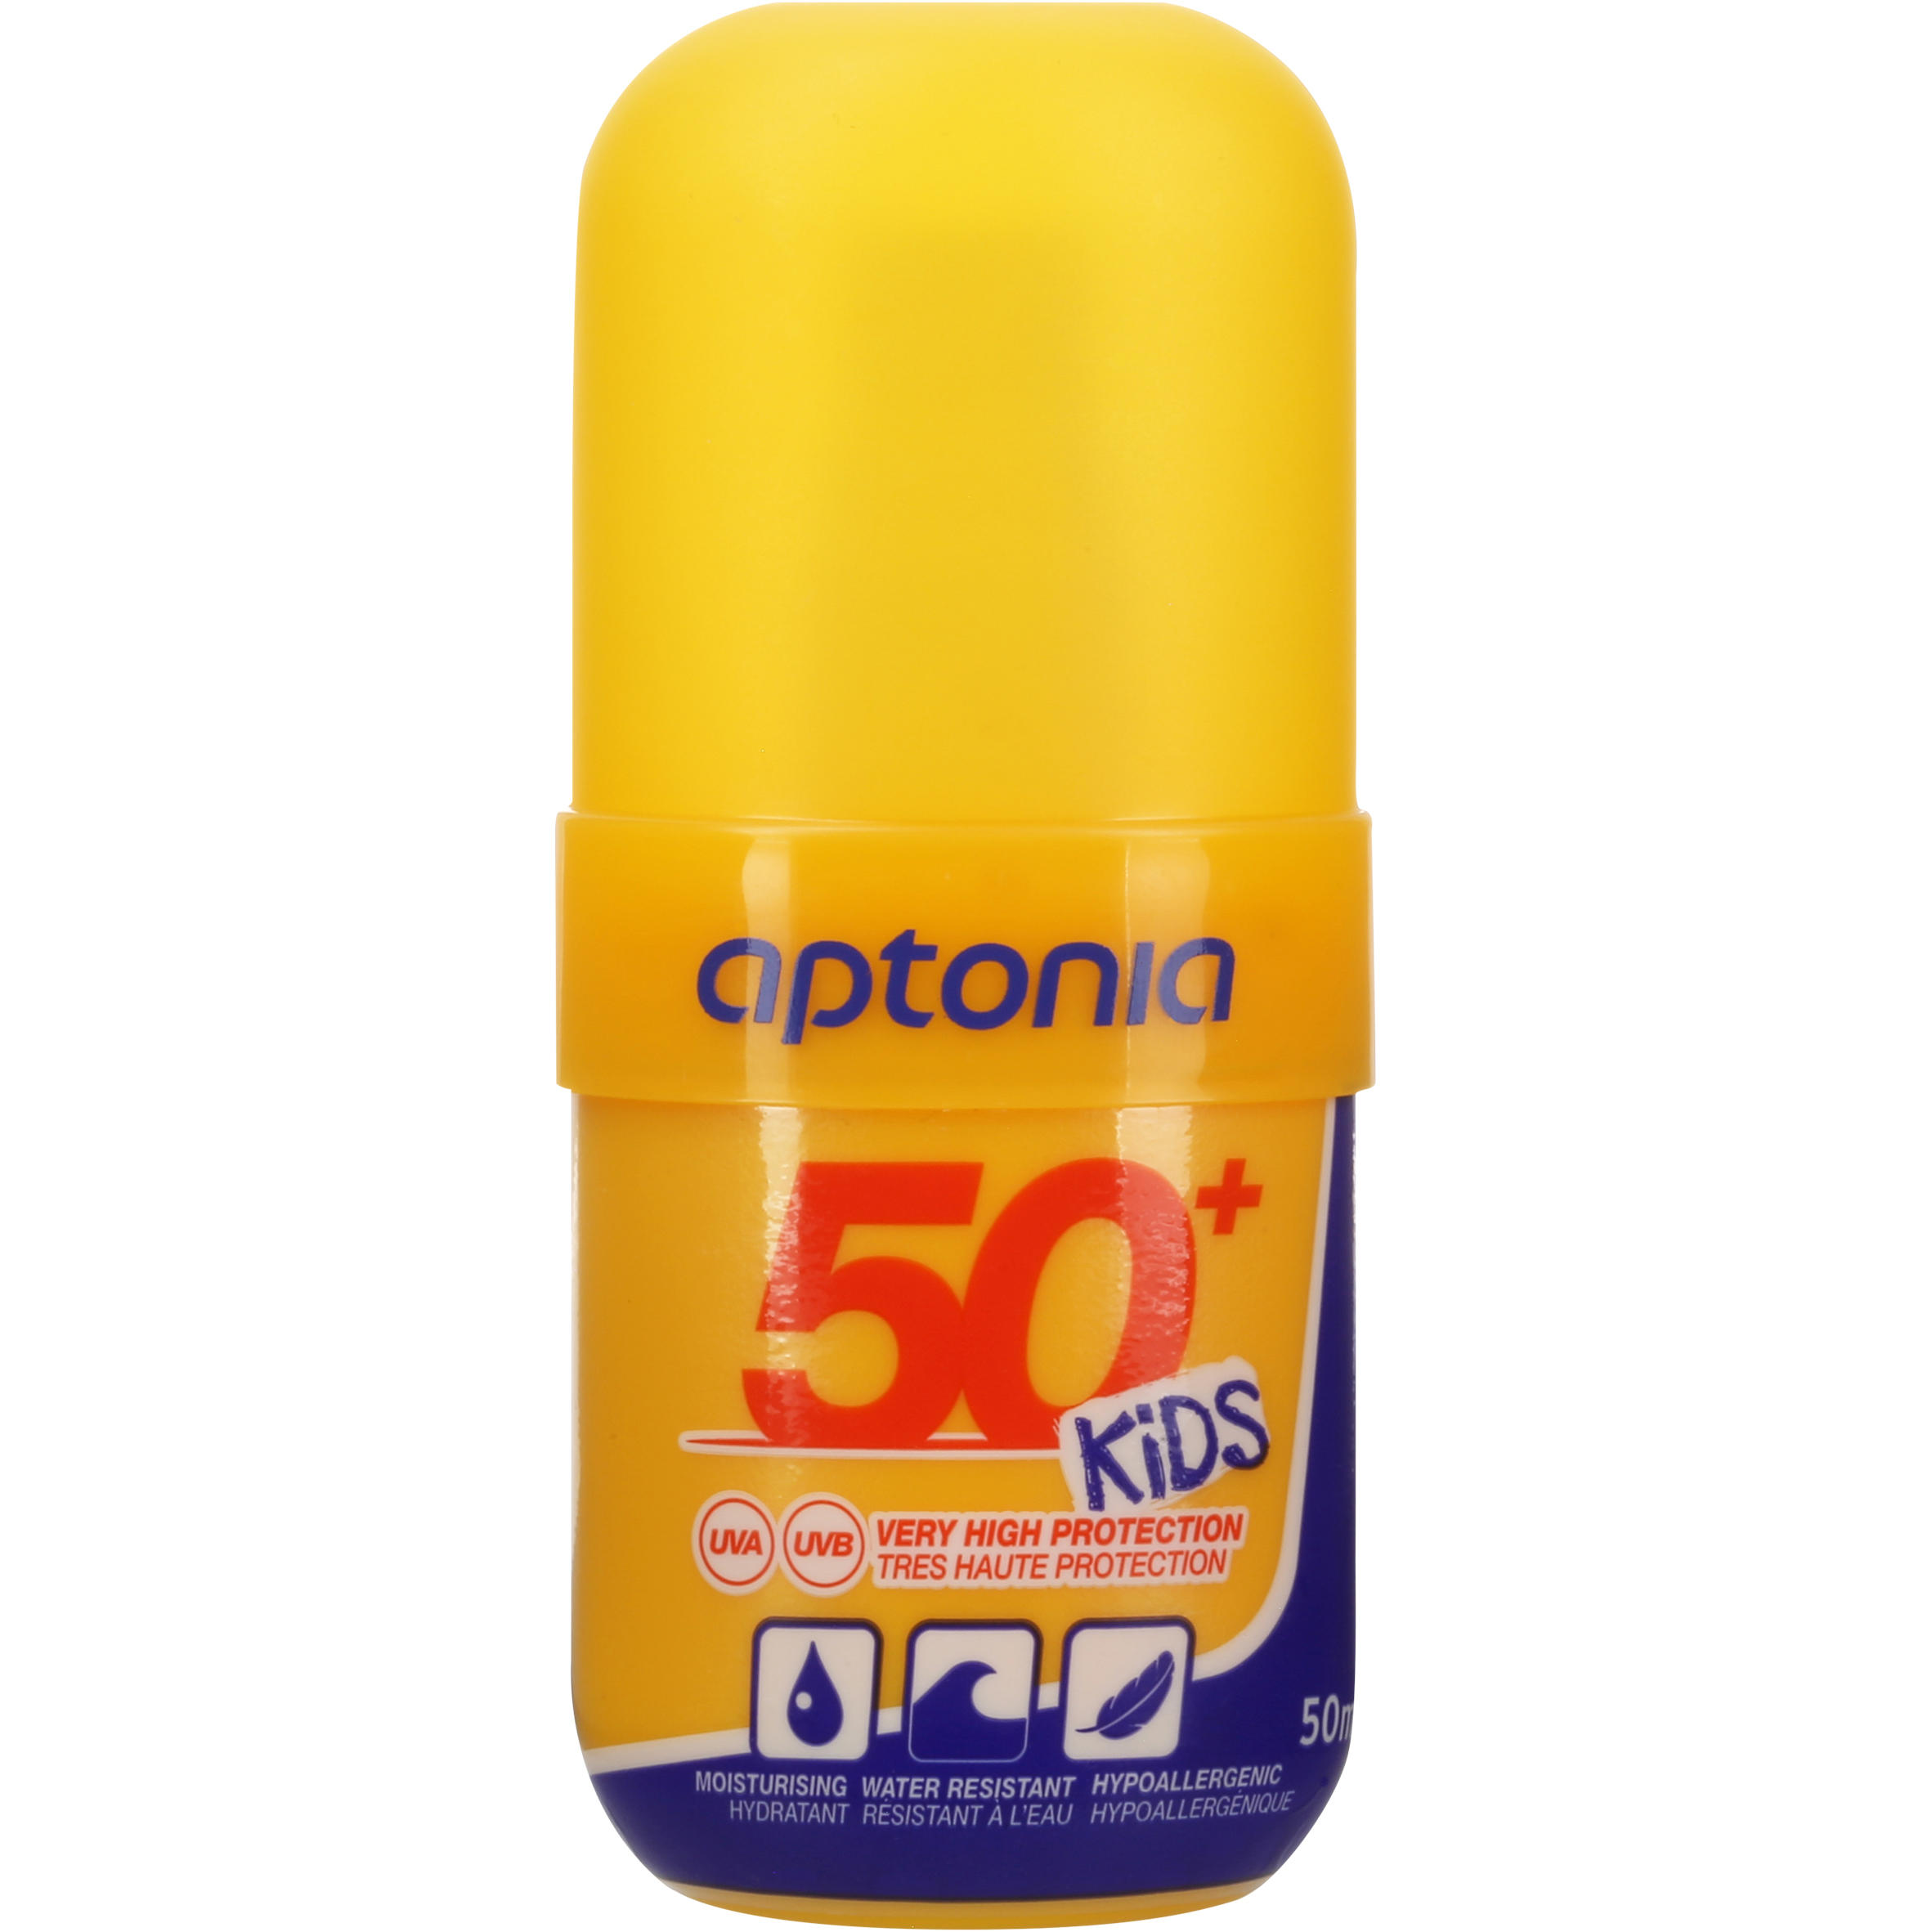 DECATHLON SPRAY SPF50+ Sun Protection Cream - 50ml